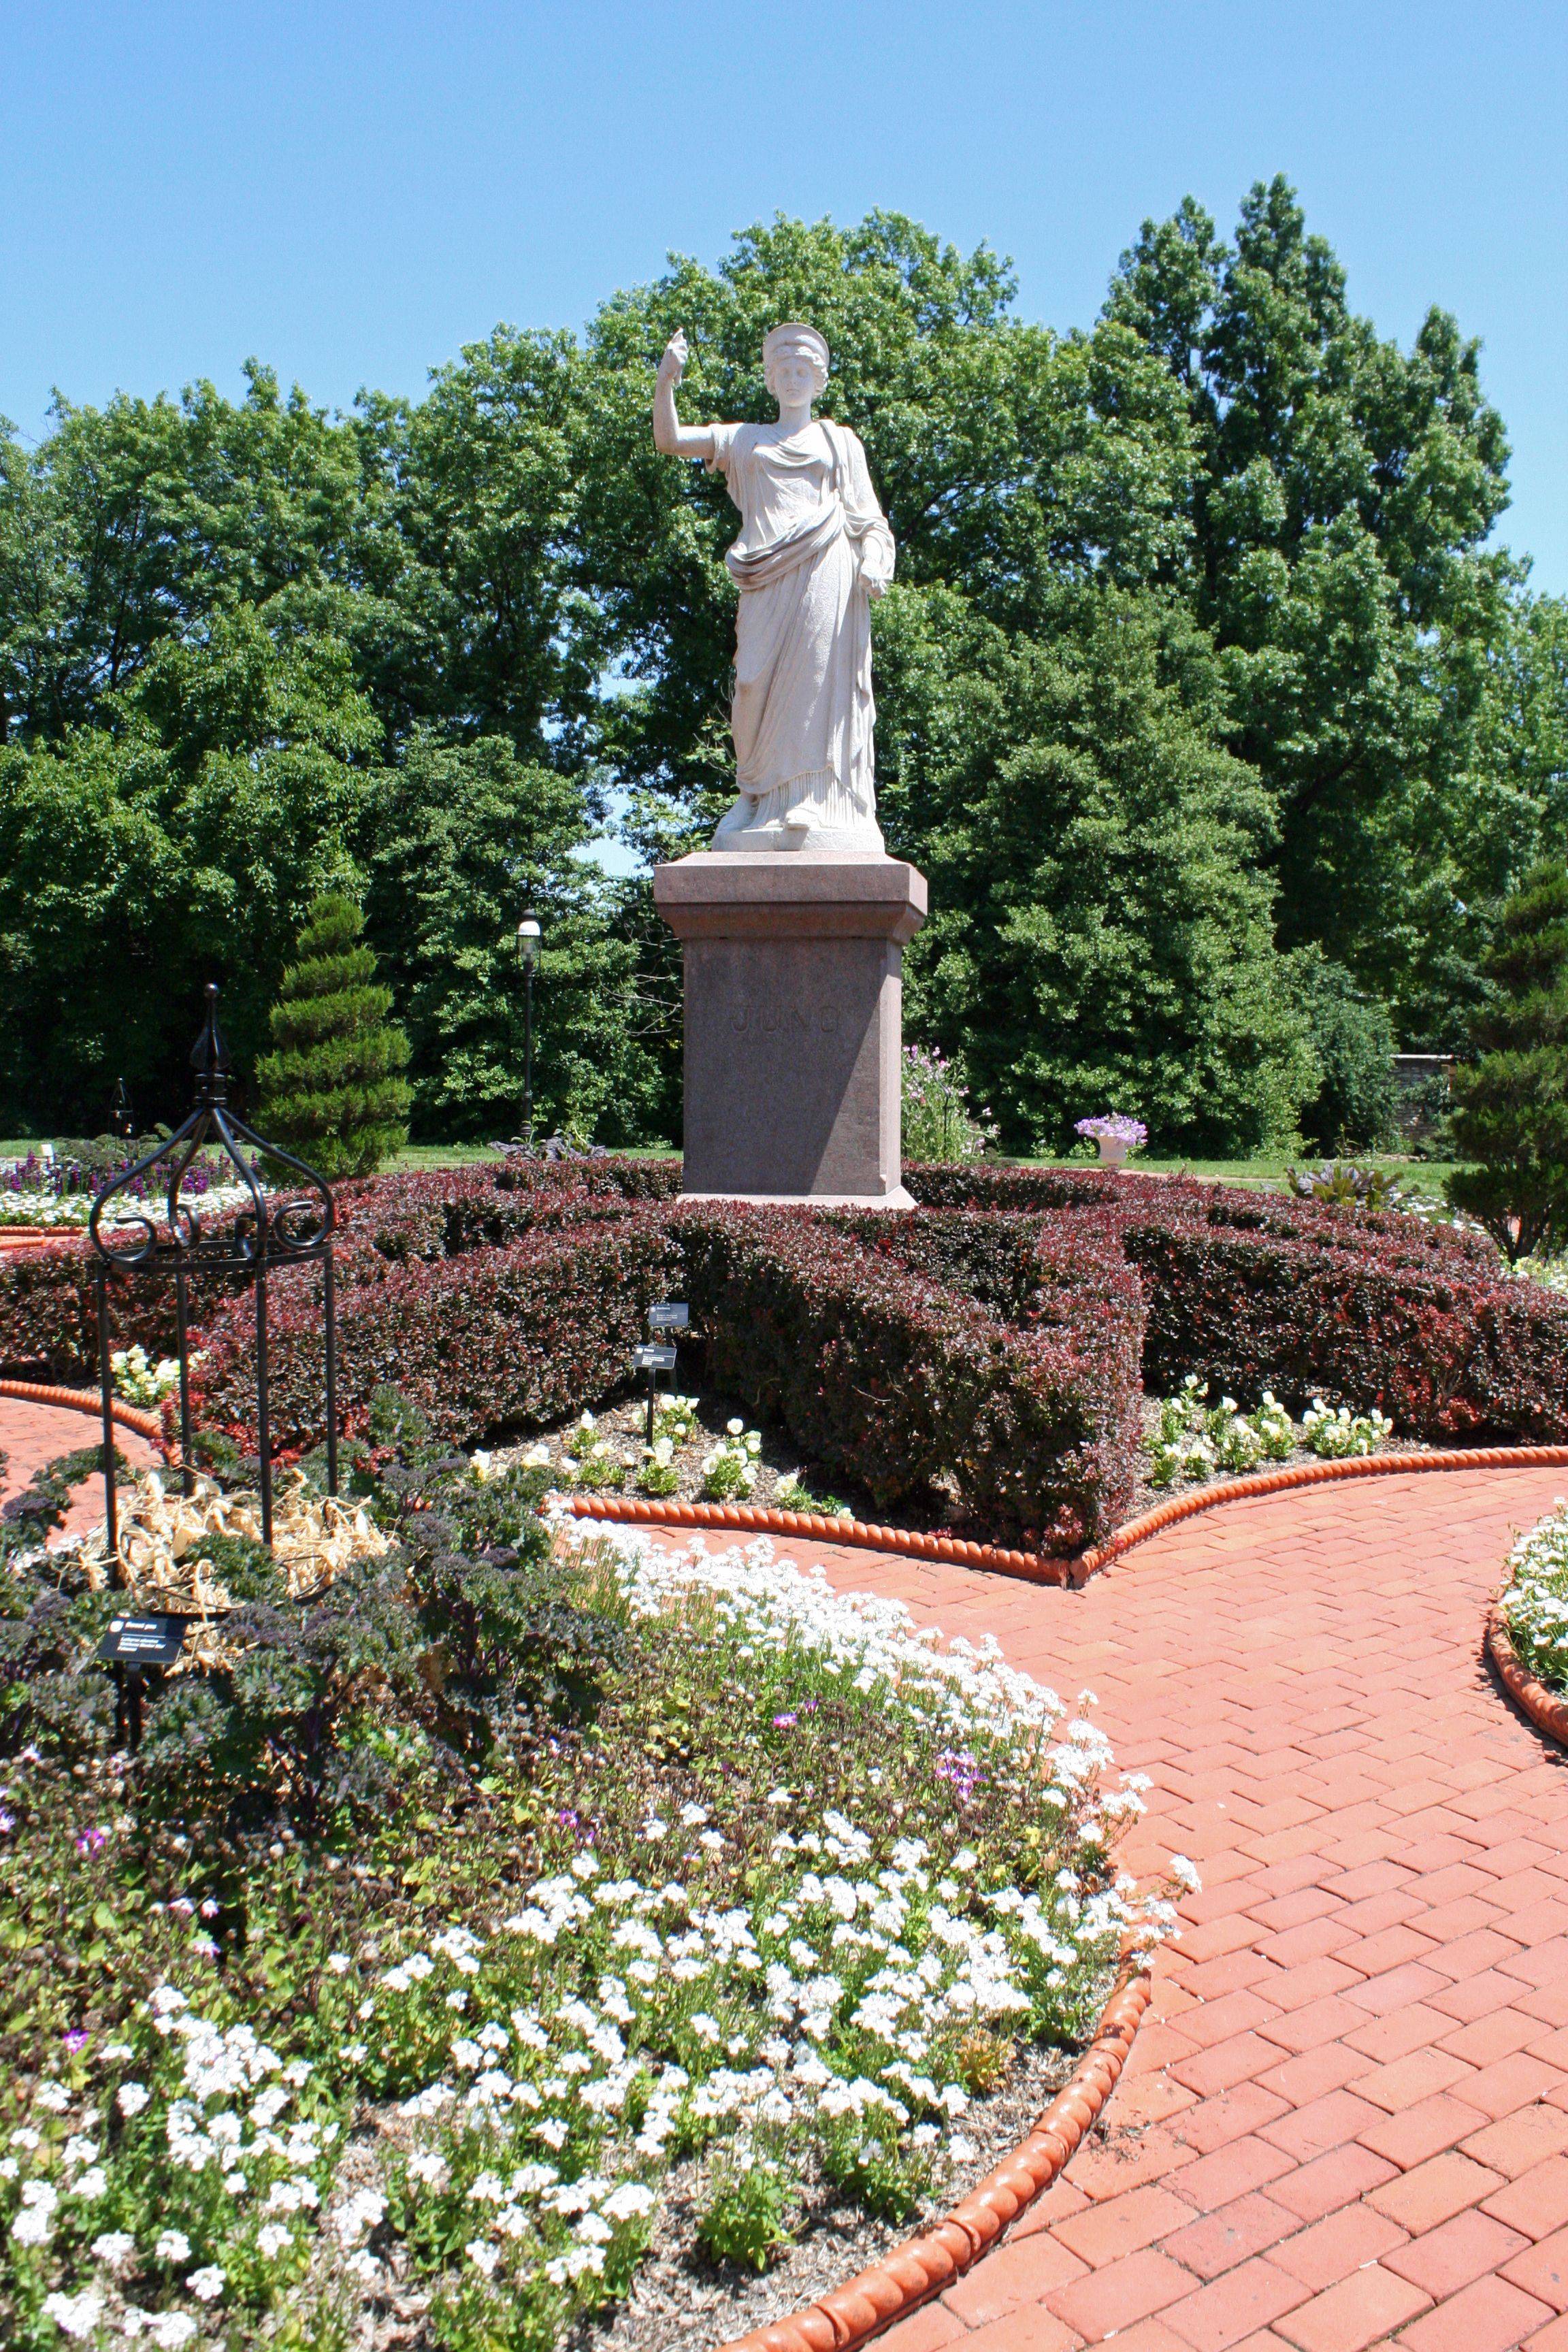 The Missouri Botanic Garden